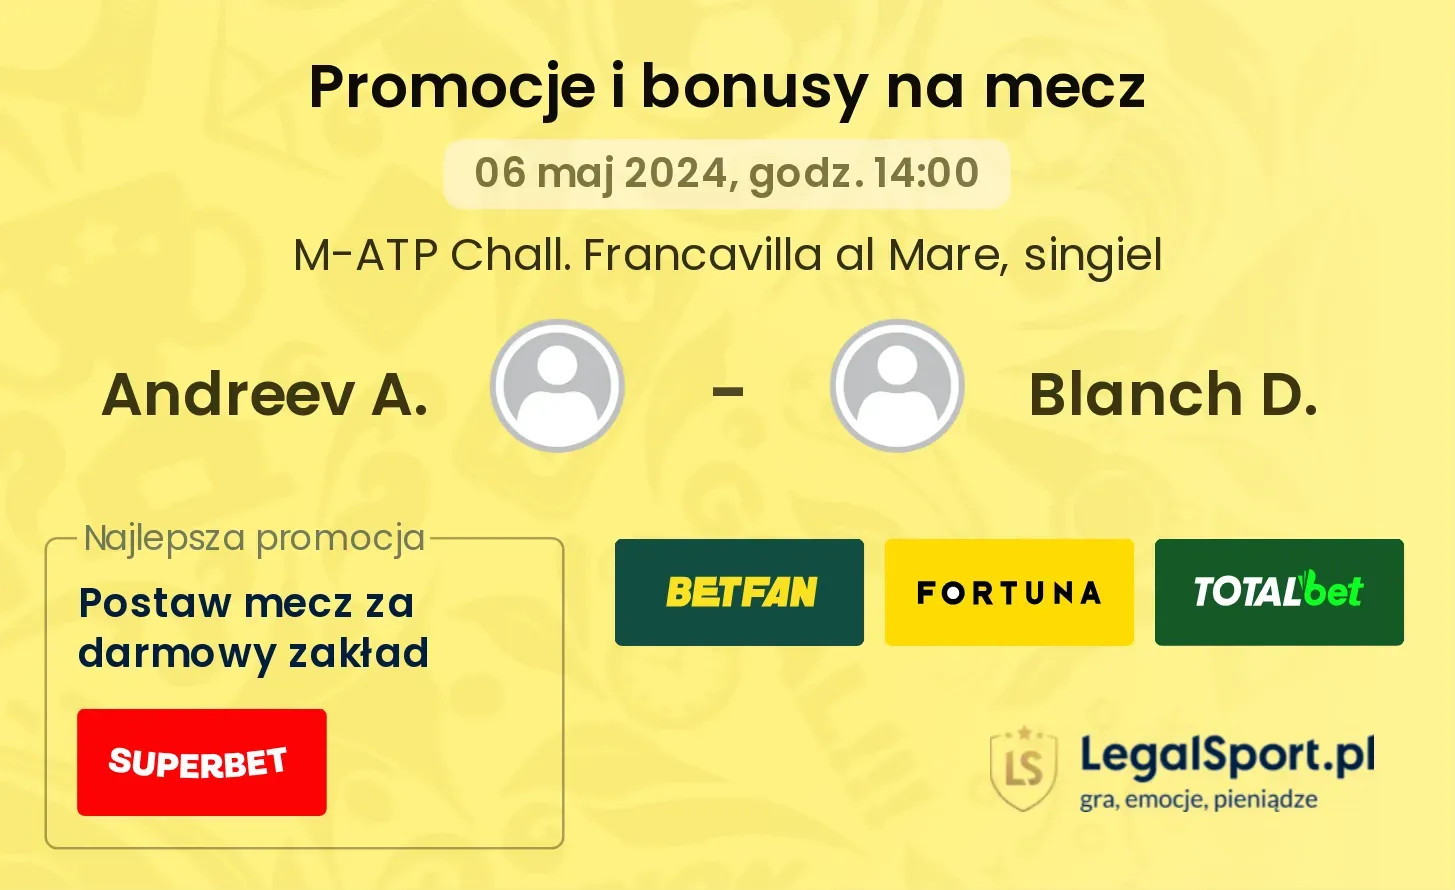 Andreev A. - Blanch D. promocje bonusy na mecz